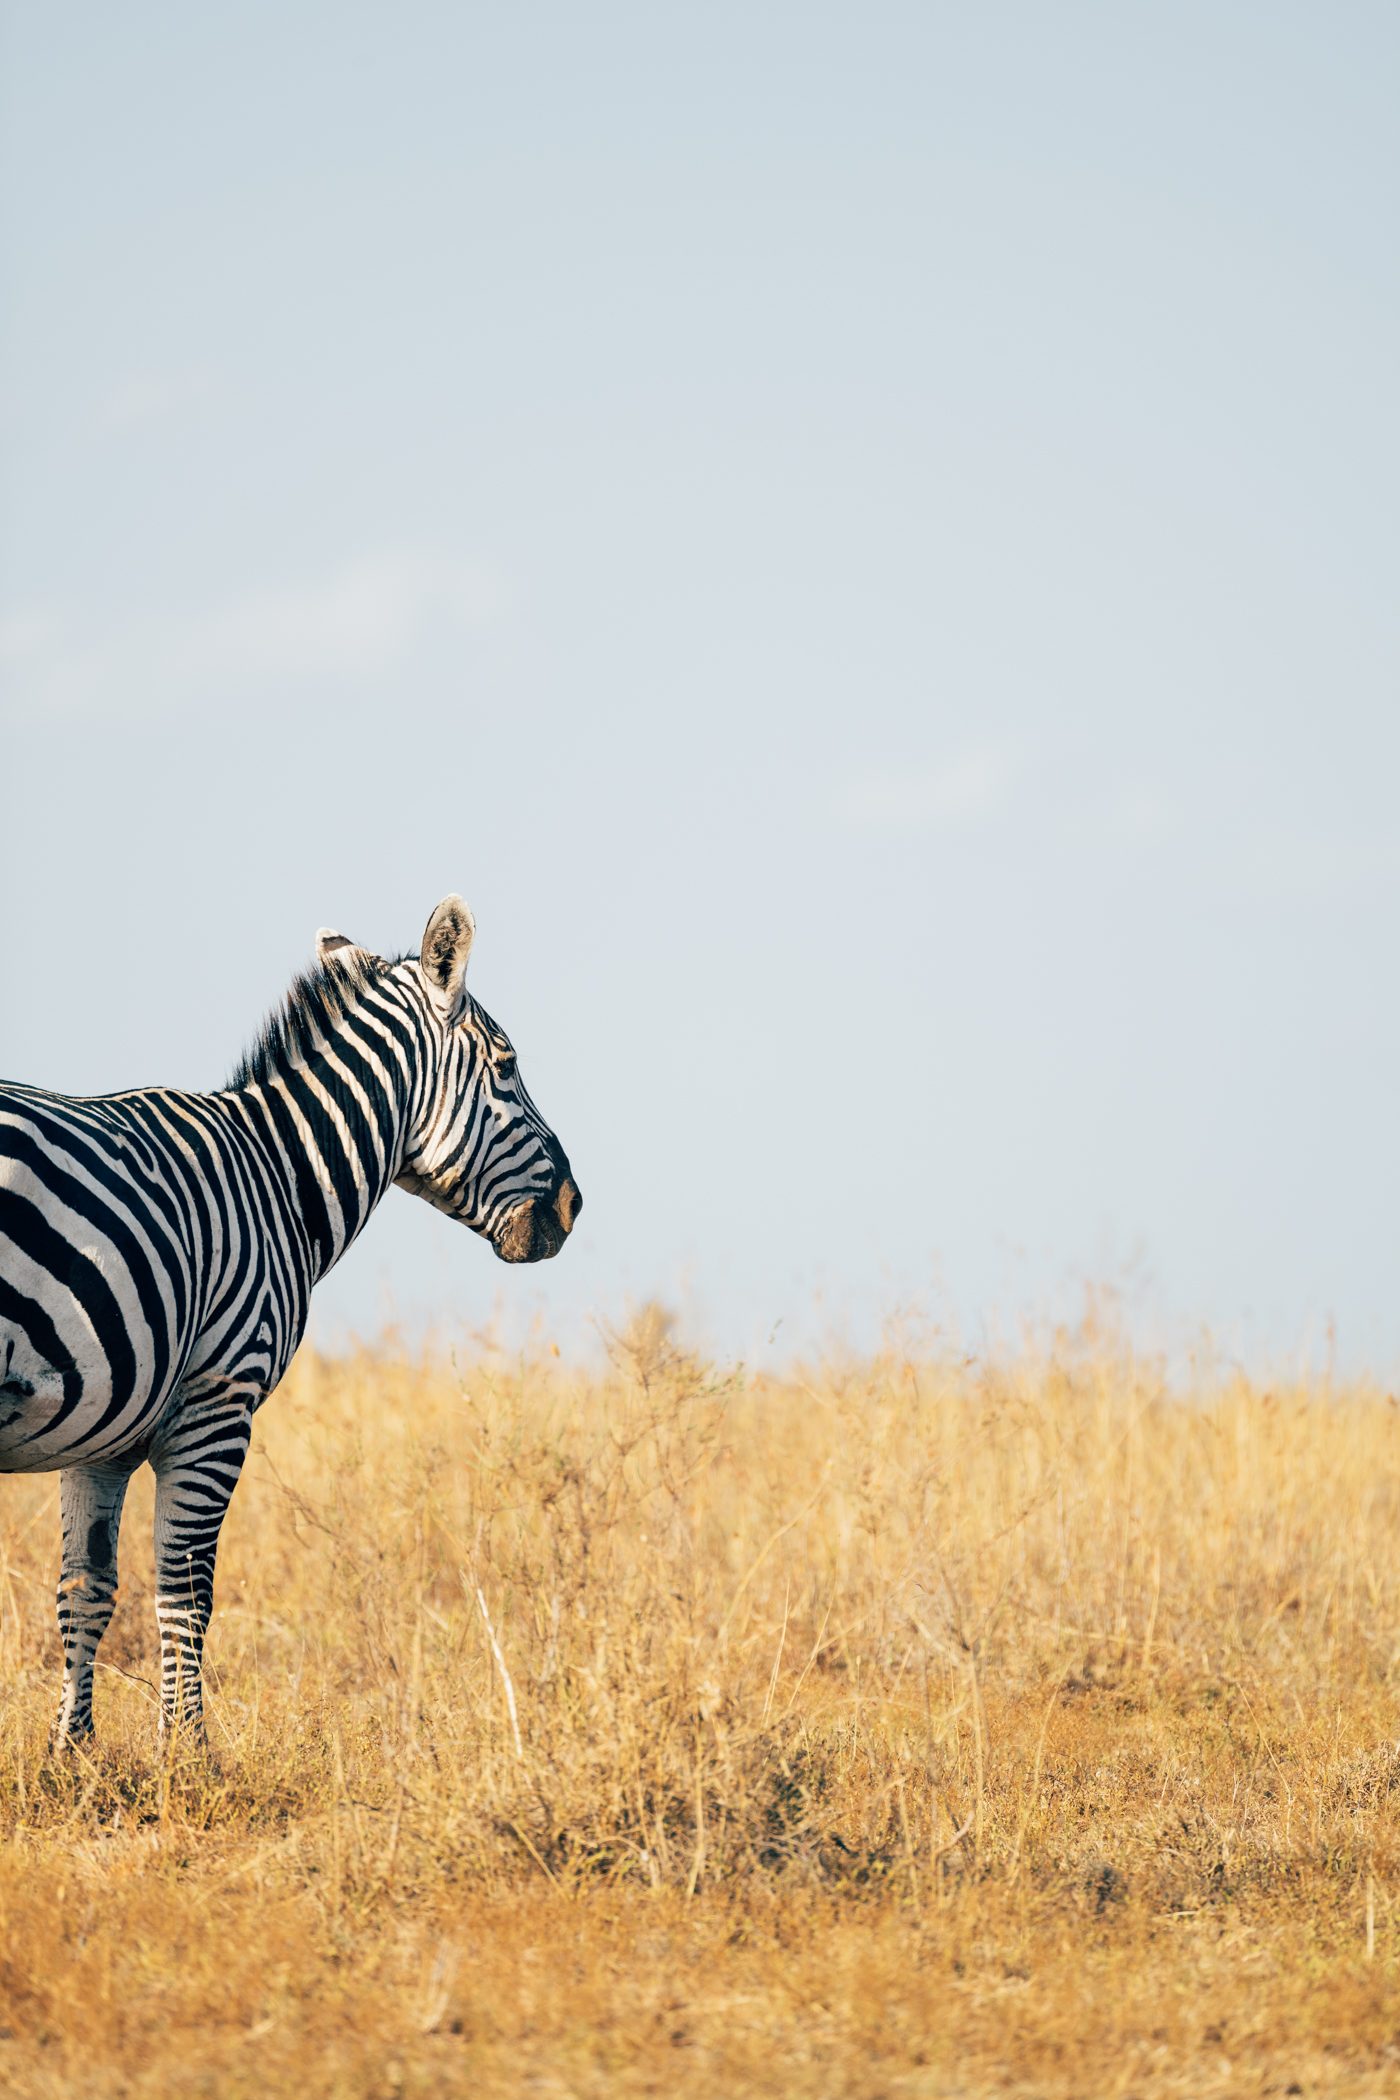 Zebra in Nairobi National Park in Kenya